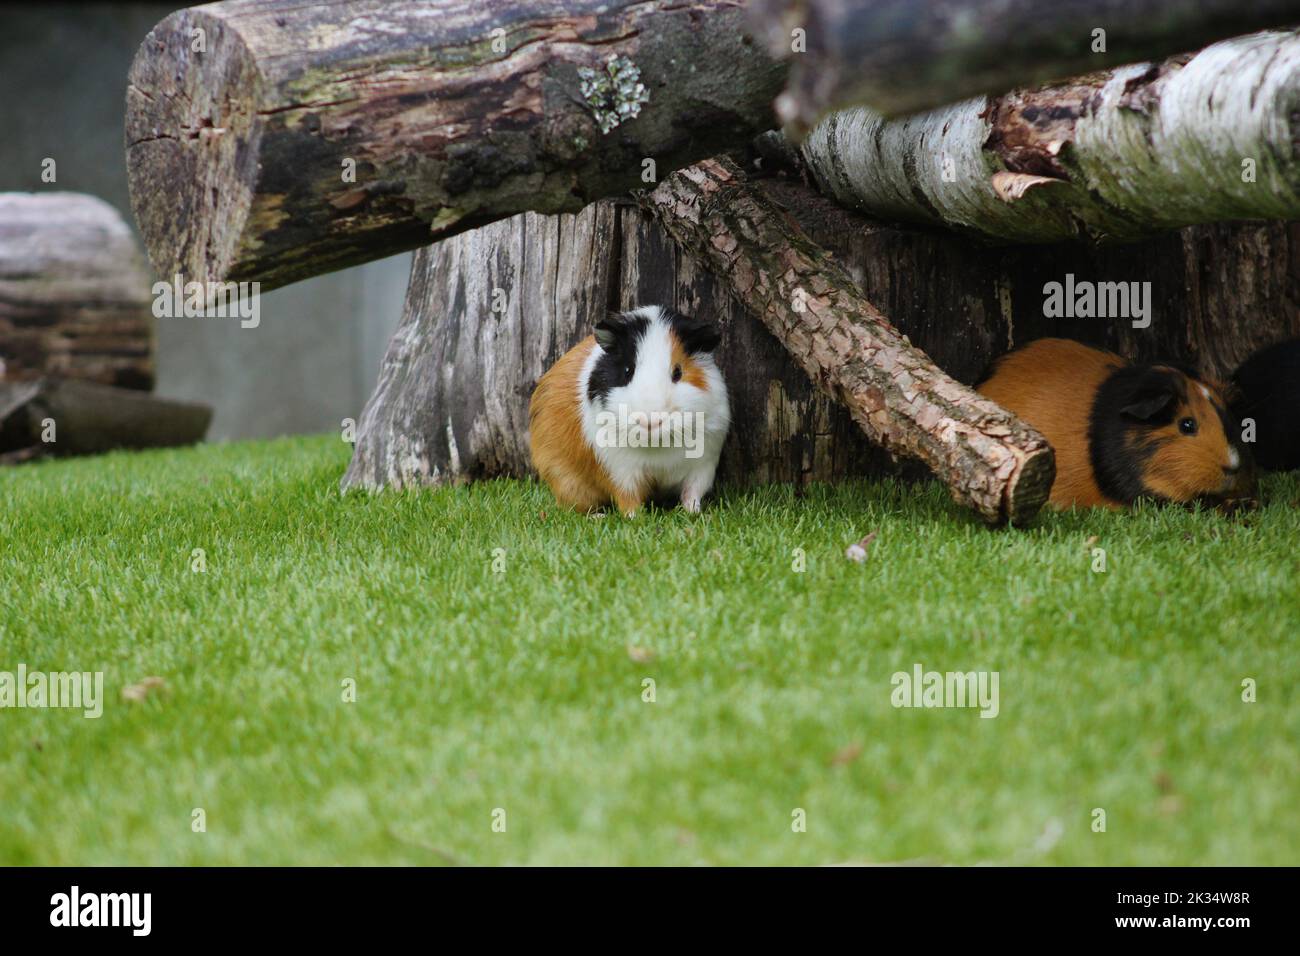 Meerschweinchen im Freigehege sitzen versteckt unter Baumstämmen im grünen Gras Foto Stock